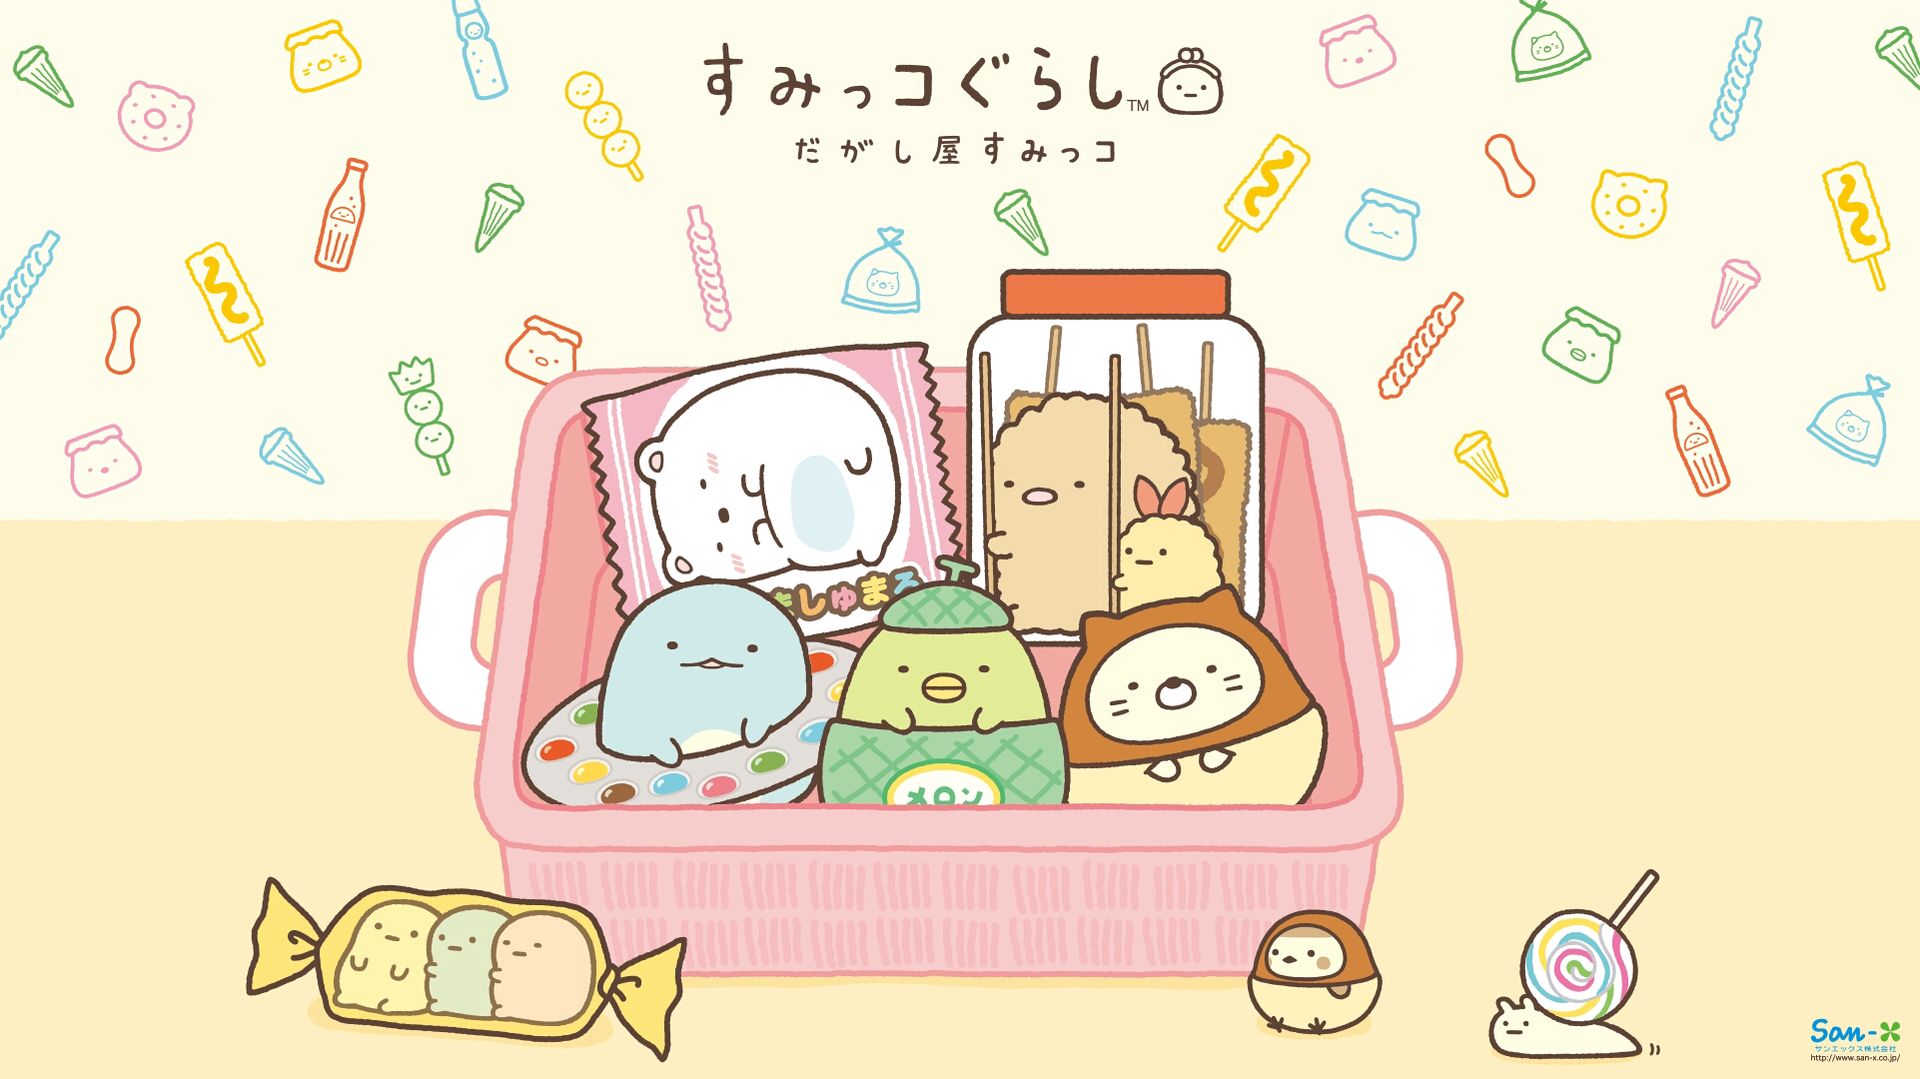 carta da parati di sumikko gurashi,cartone animato,testo,illustrazione,bambino,clipart